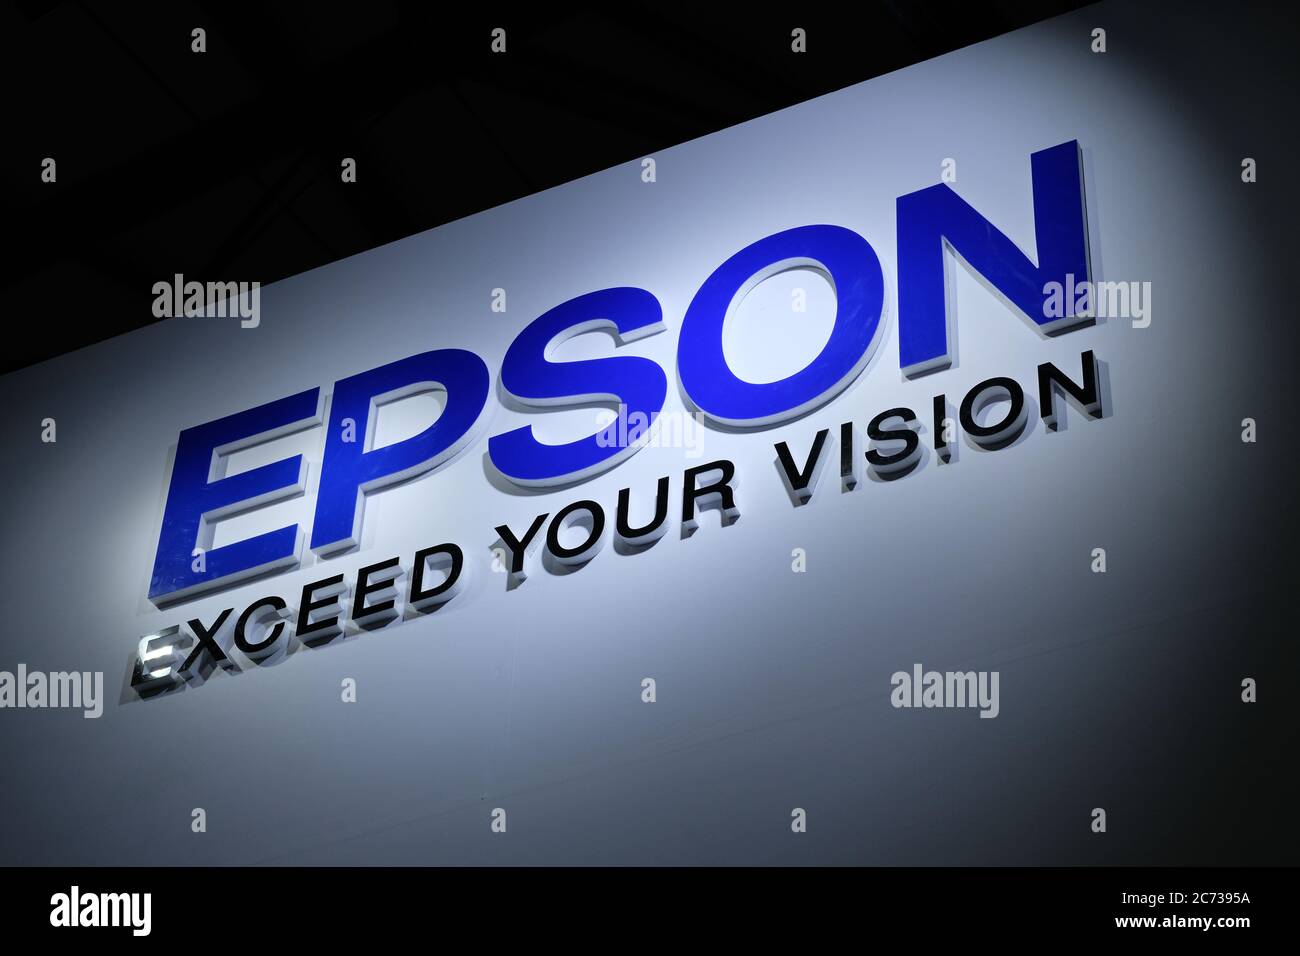 Logo bleu brillant de la marque EPSON Corporation avec slogan dépassez votre vision. Sur fond blanc foncé. Célèbre entreprise d'électronique japonaise. Banque D'Images